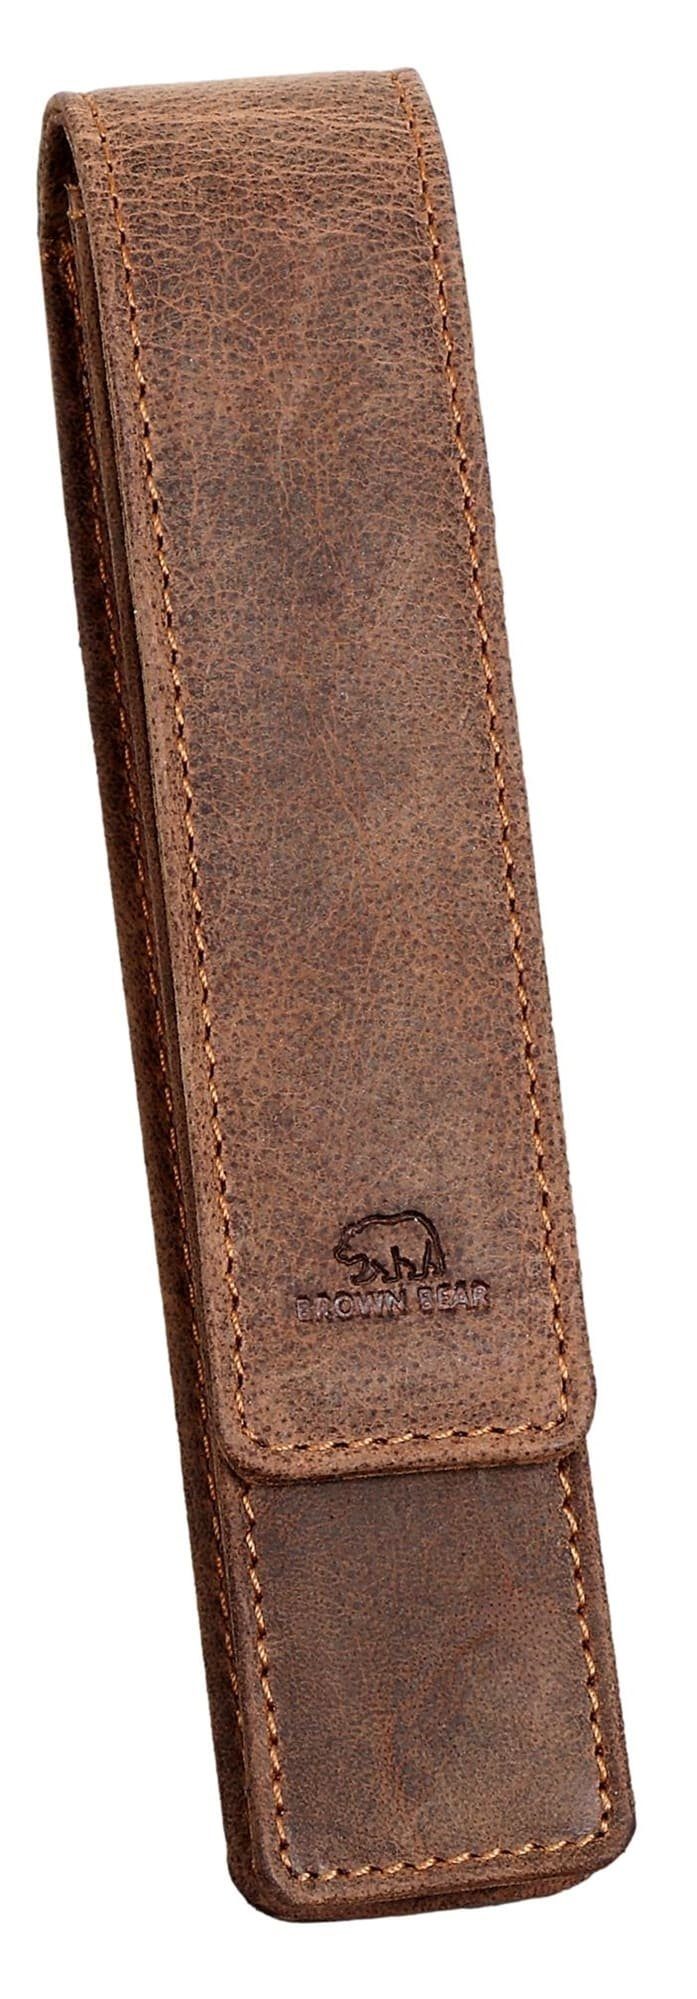 Brown Bear Schreibgeräteetui Golf 01 - Fülleretui aus Echtleder für einen Stift, mit Magnetverschluss für Damen und Herren Braun Vintage Braun-Vintage | Federmäppchen